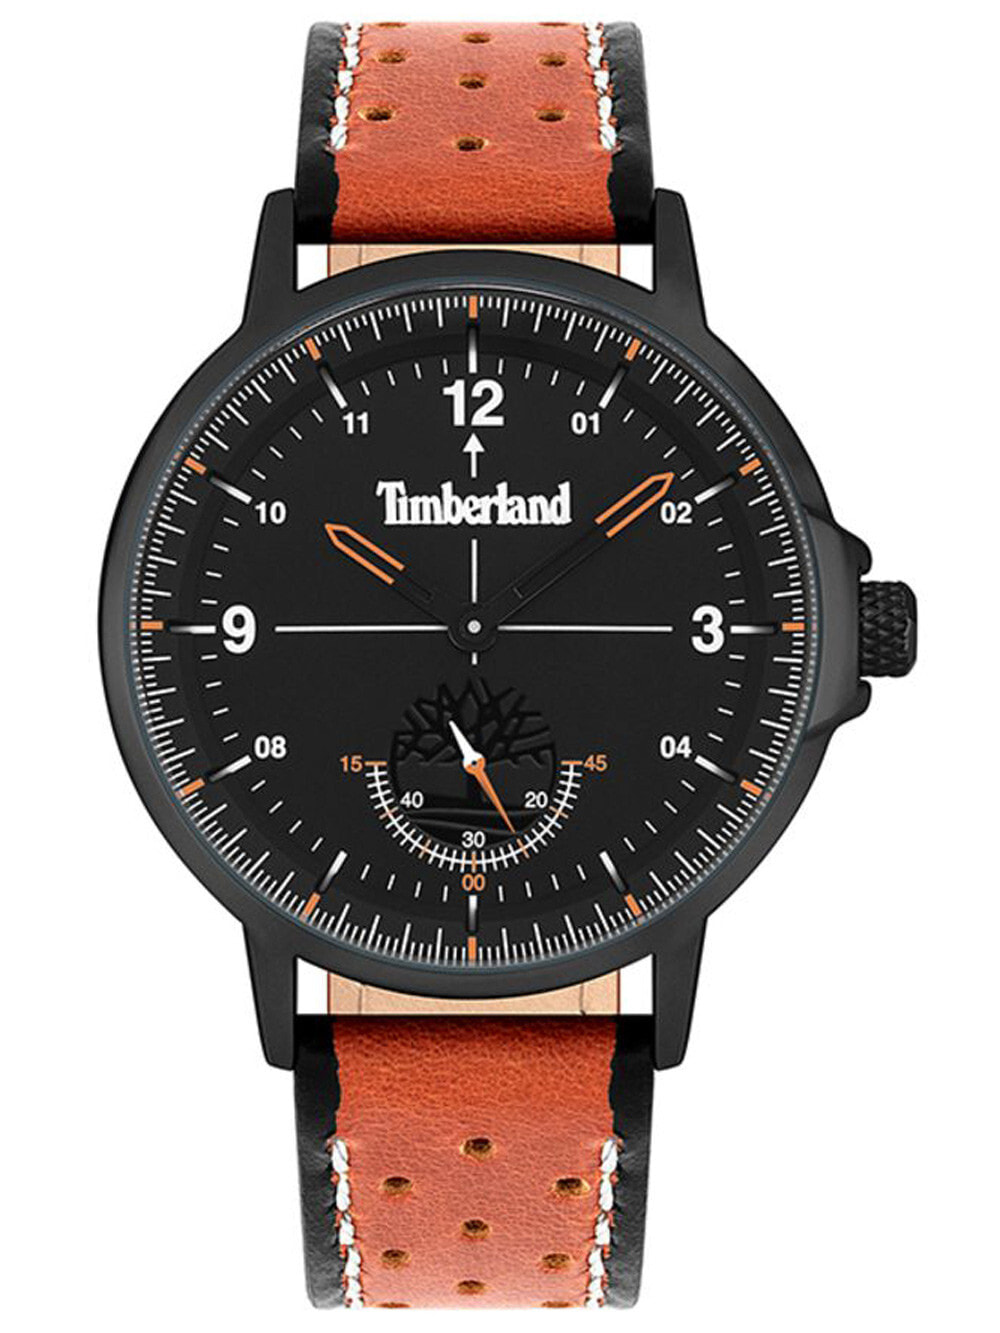 Мужские наручные часы с оранжевым кожаным ремешком Timberland TBL15943JYB.02 Parkridge 42mm 3ATM